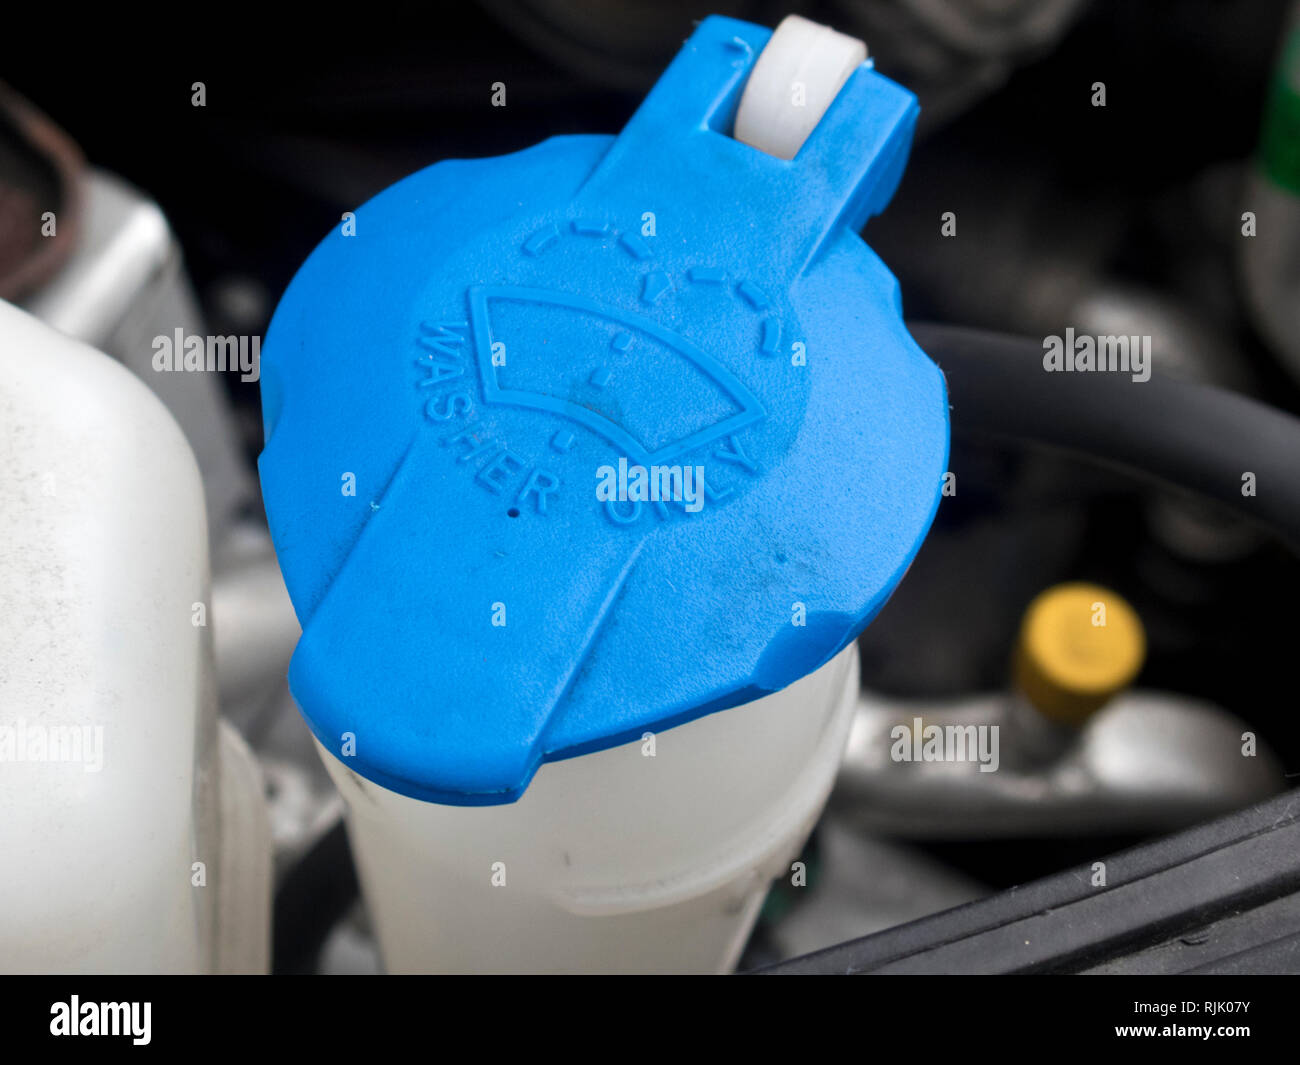 https://c8.alamy.com/comp/RJK07Y/automotive-reservoir-bottle-for-screen-wash-or-washer-bottle-RJK07Y.jpg